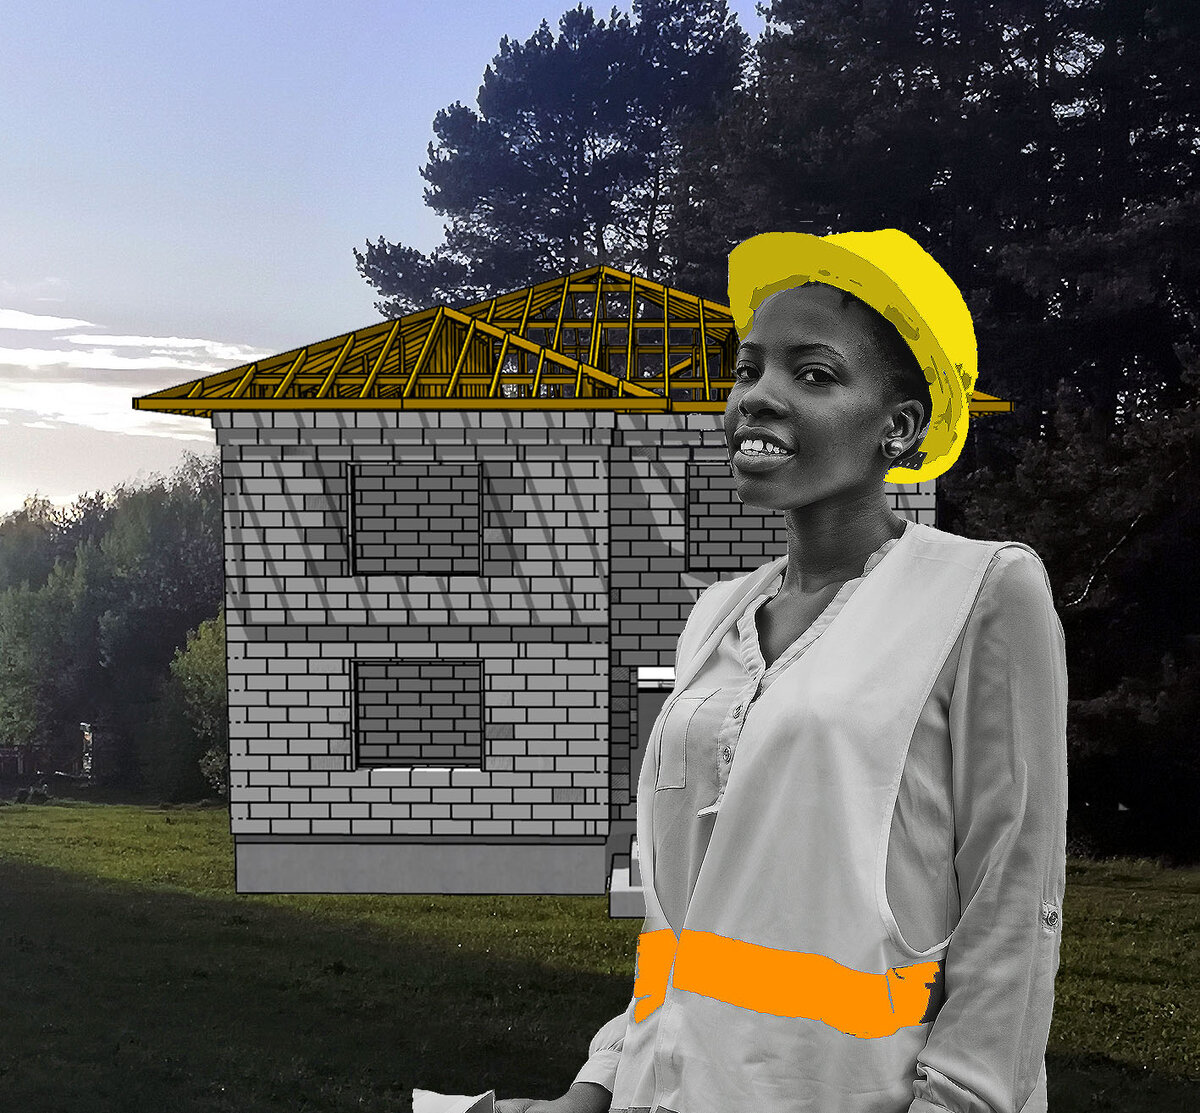 Что нам стоит дом построить, нарисуем будем жить (образ pixabay.com)